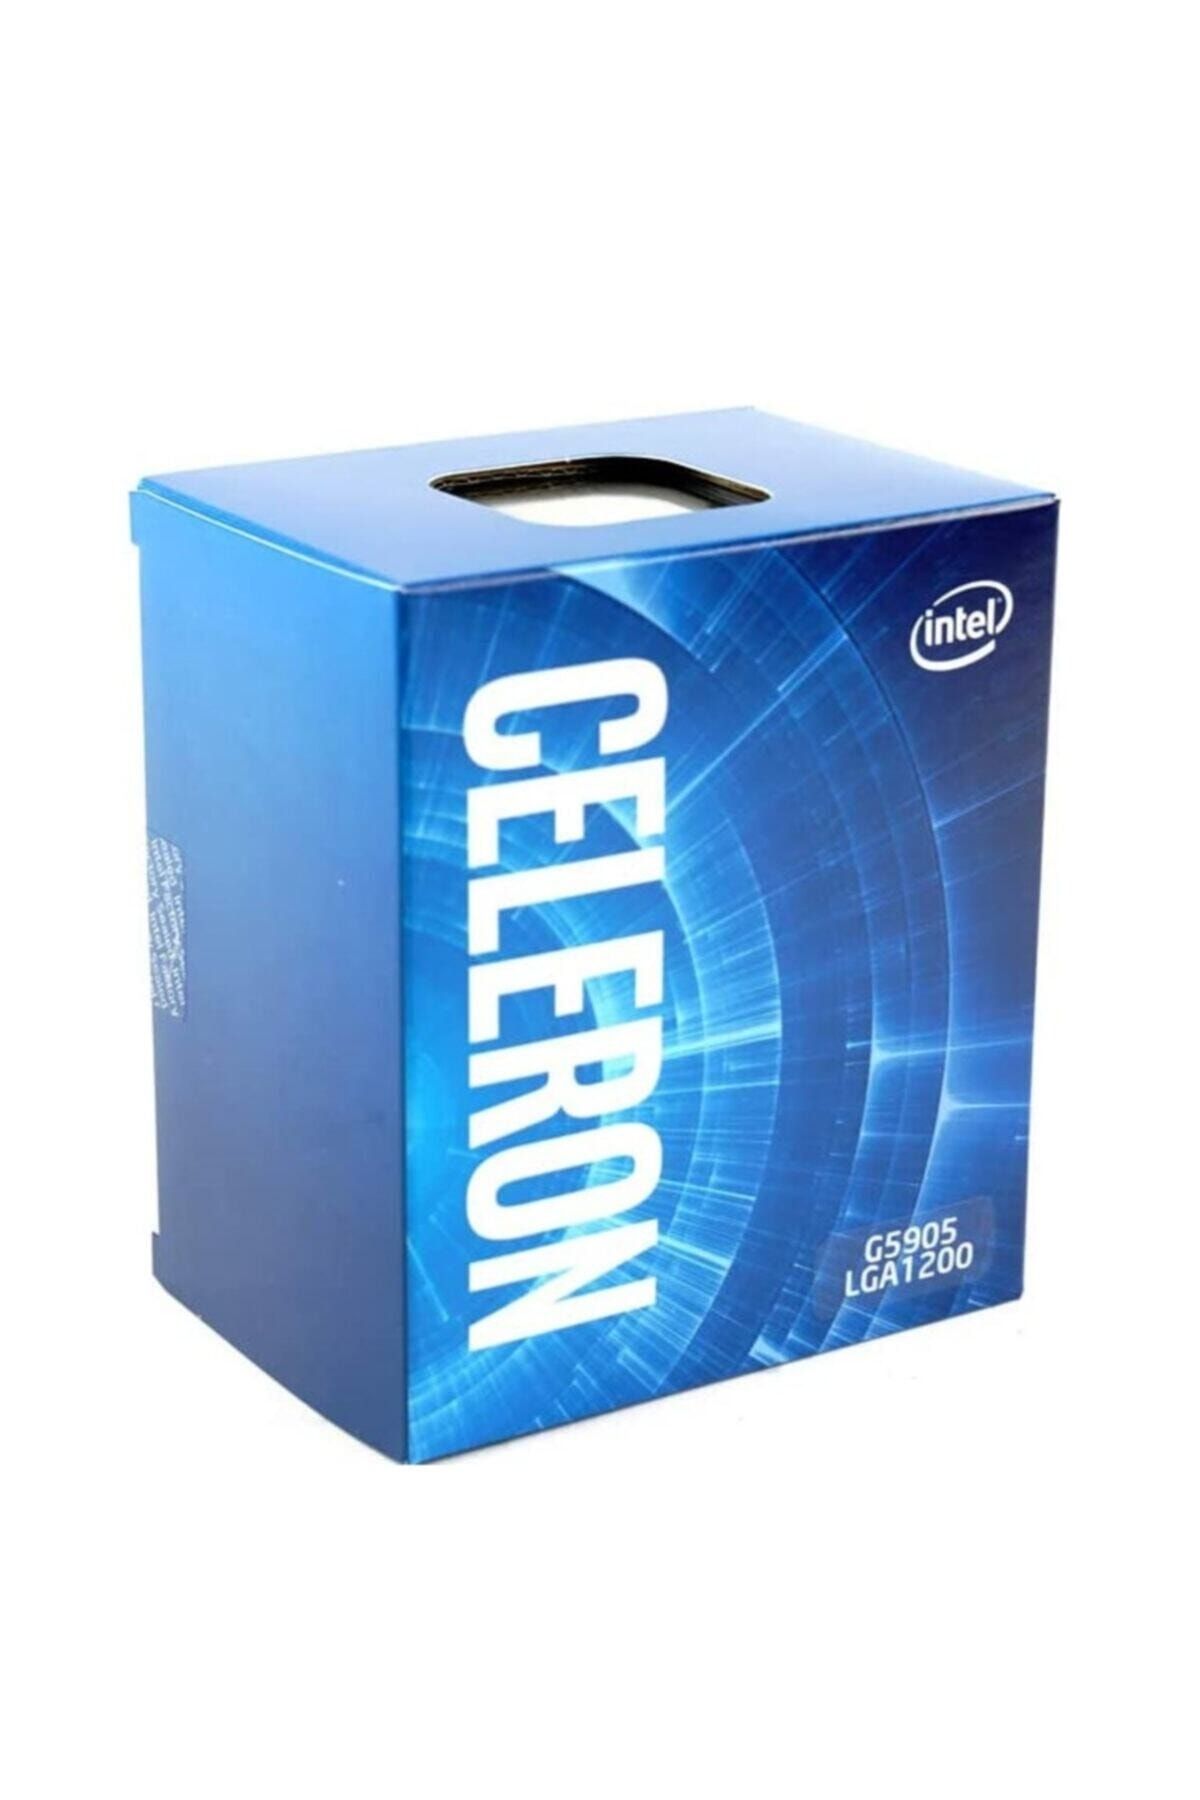 Цена int. Процессор Intel Celeron g4900. Процессор Intel Celeron g4900 g4920 OEM. Intel Celeron g4900 lga1151 v2, 2 x 3100 МГЦ. Процессор CPU Intel Celeron g4900 (3.1GHZ/2mb/2 Cores) lga1151 OEM, uhd610 350mhz, TDP 54w, Max 64gb.